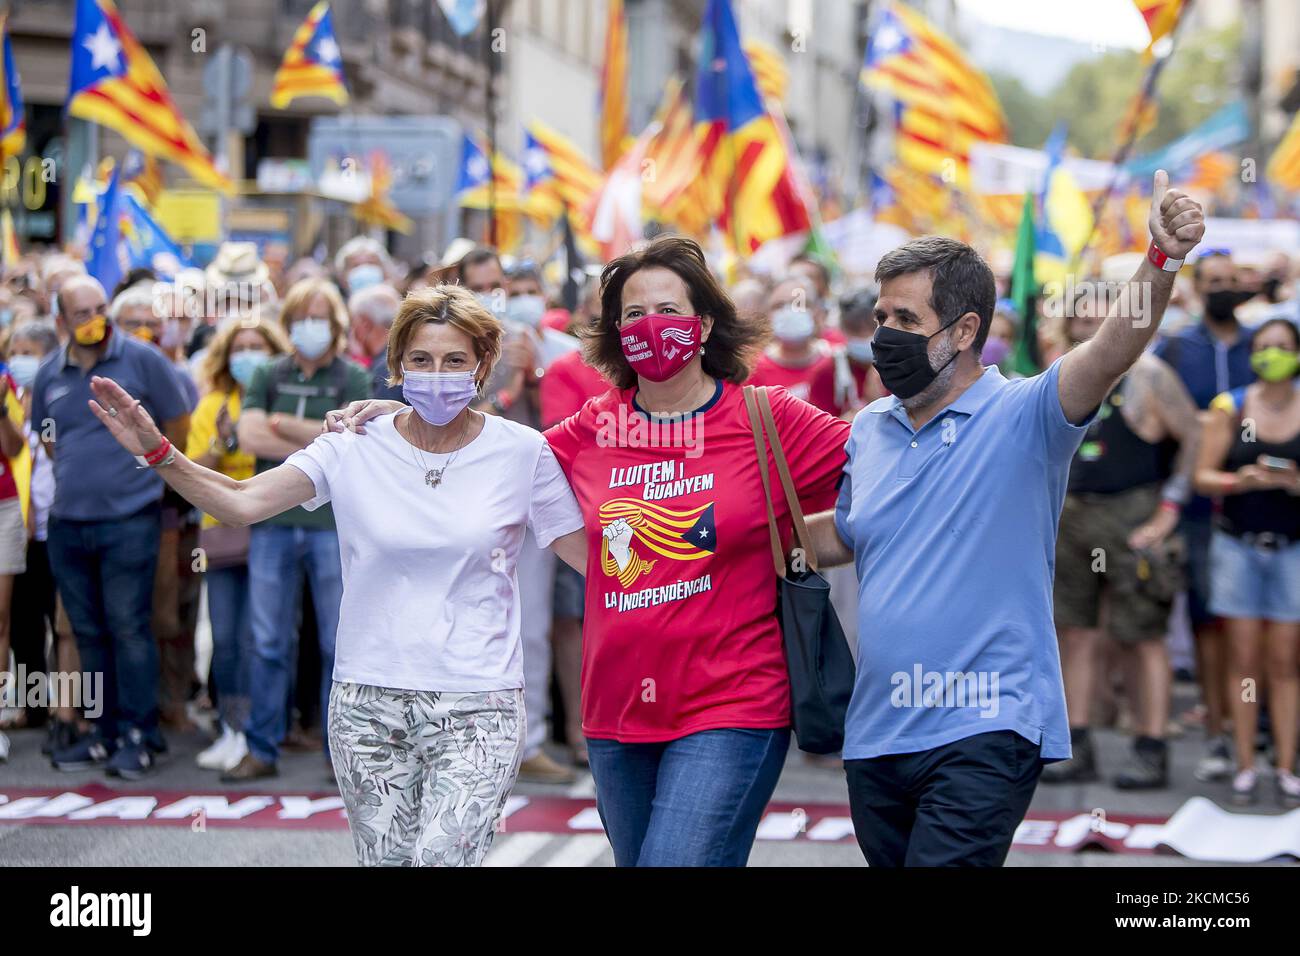 Elisenda Peluzie, Präsidentin des ANC, begleitet von den ehemaligen Präsidenten der Organisation und begnadeten Gefangenen, Carme Forcadell und Jordi Sánchez, sowie dem Präsidenten des Òmnium Cultural und auch begnadeten Gefangenen, Jordi Cuixart. Hunderttausende von Menschen nehmen an der Unabhängigkeitsdemonstration am 11. September, dem Nationalfeiertag Kataloniens, Teil, die von der Nationalversammlung Kataloniens organisiert wird. In Barcelona, Katalonien, Spanien, 11. September 2021. (Foto von Albert Llop/NurPhoto) Stockfoto